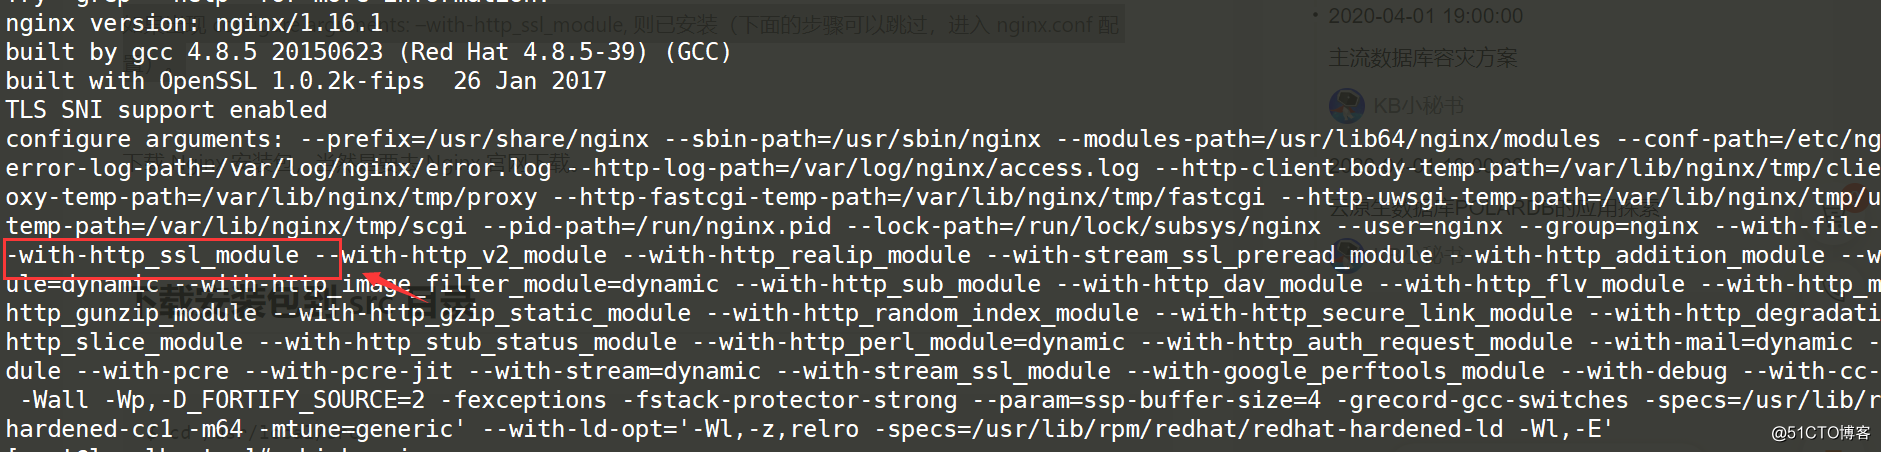 Zabbix uses SSL certificate to achieve https login